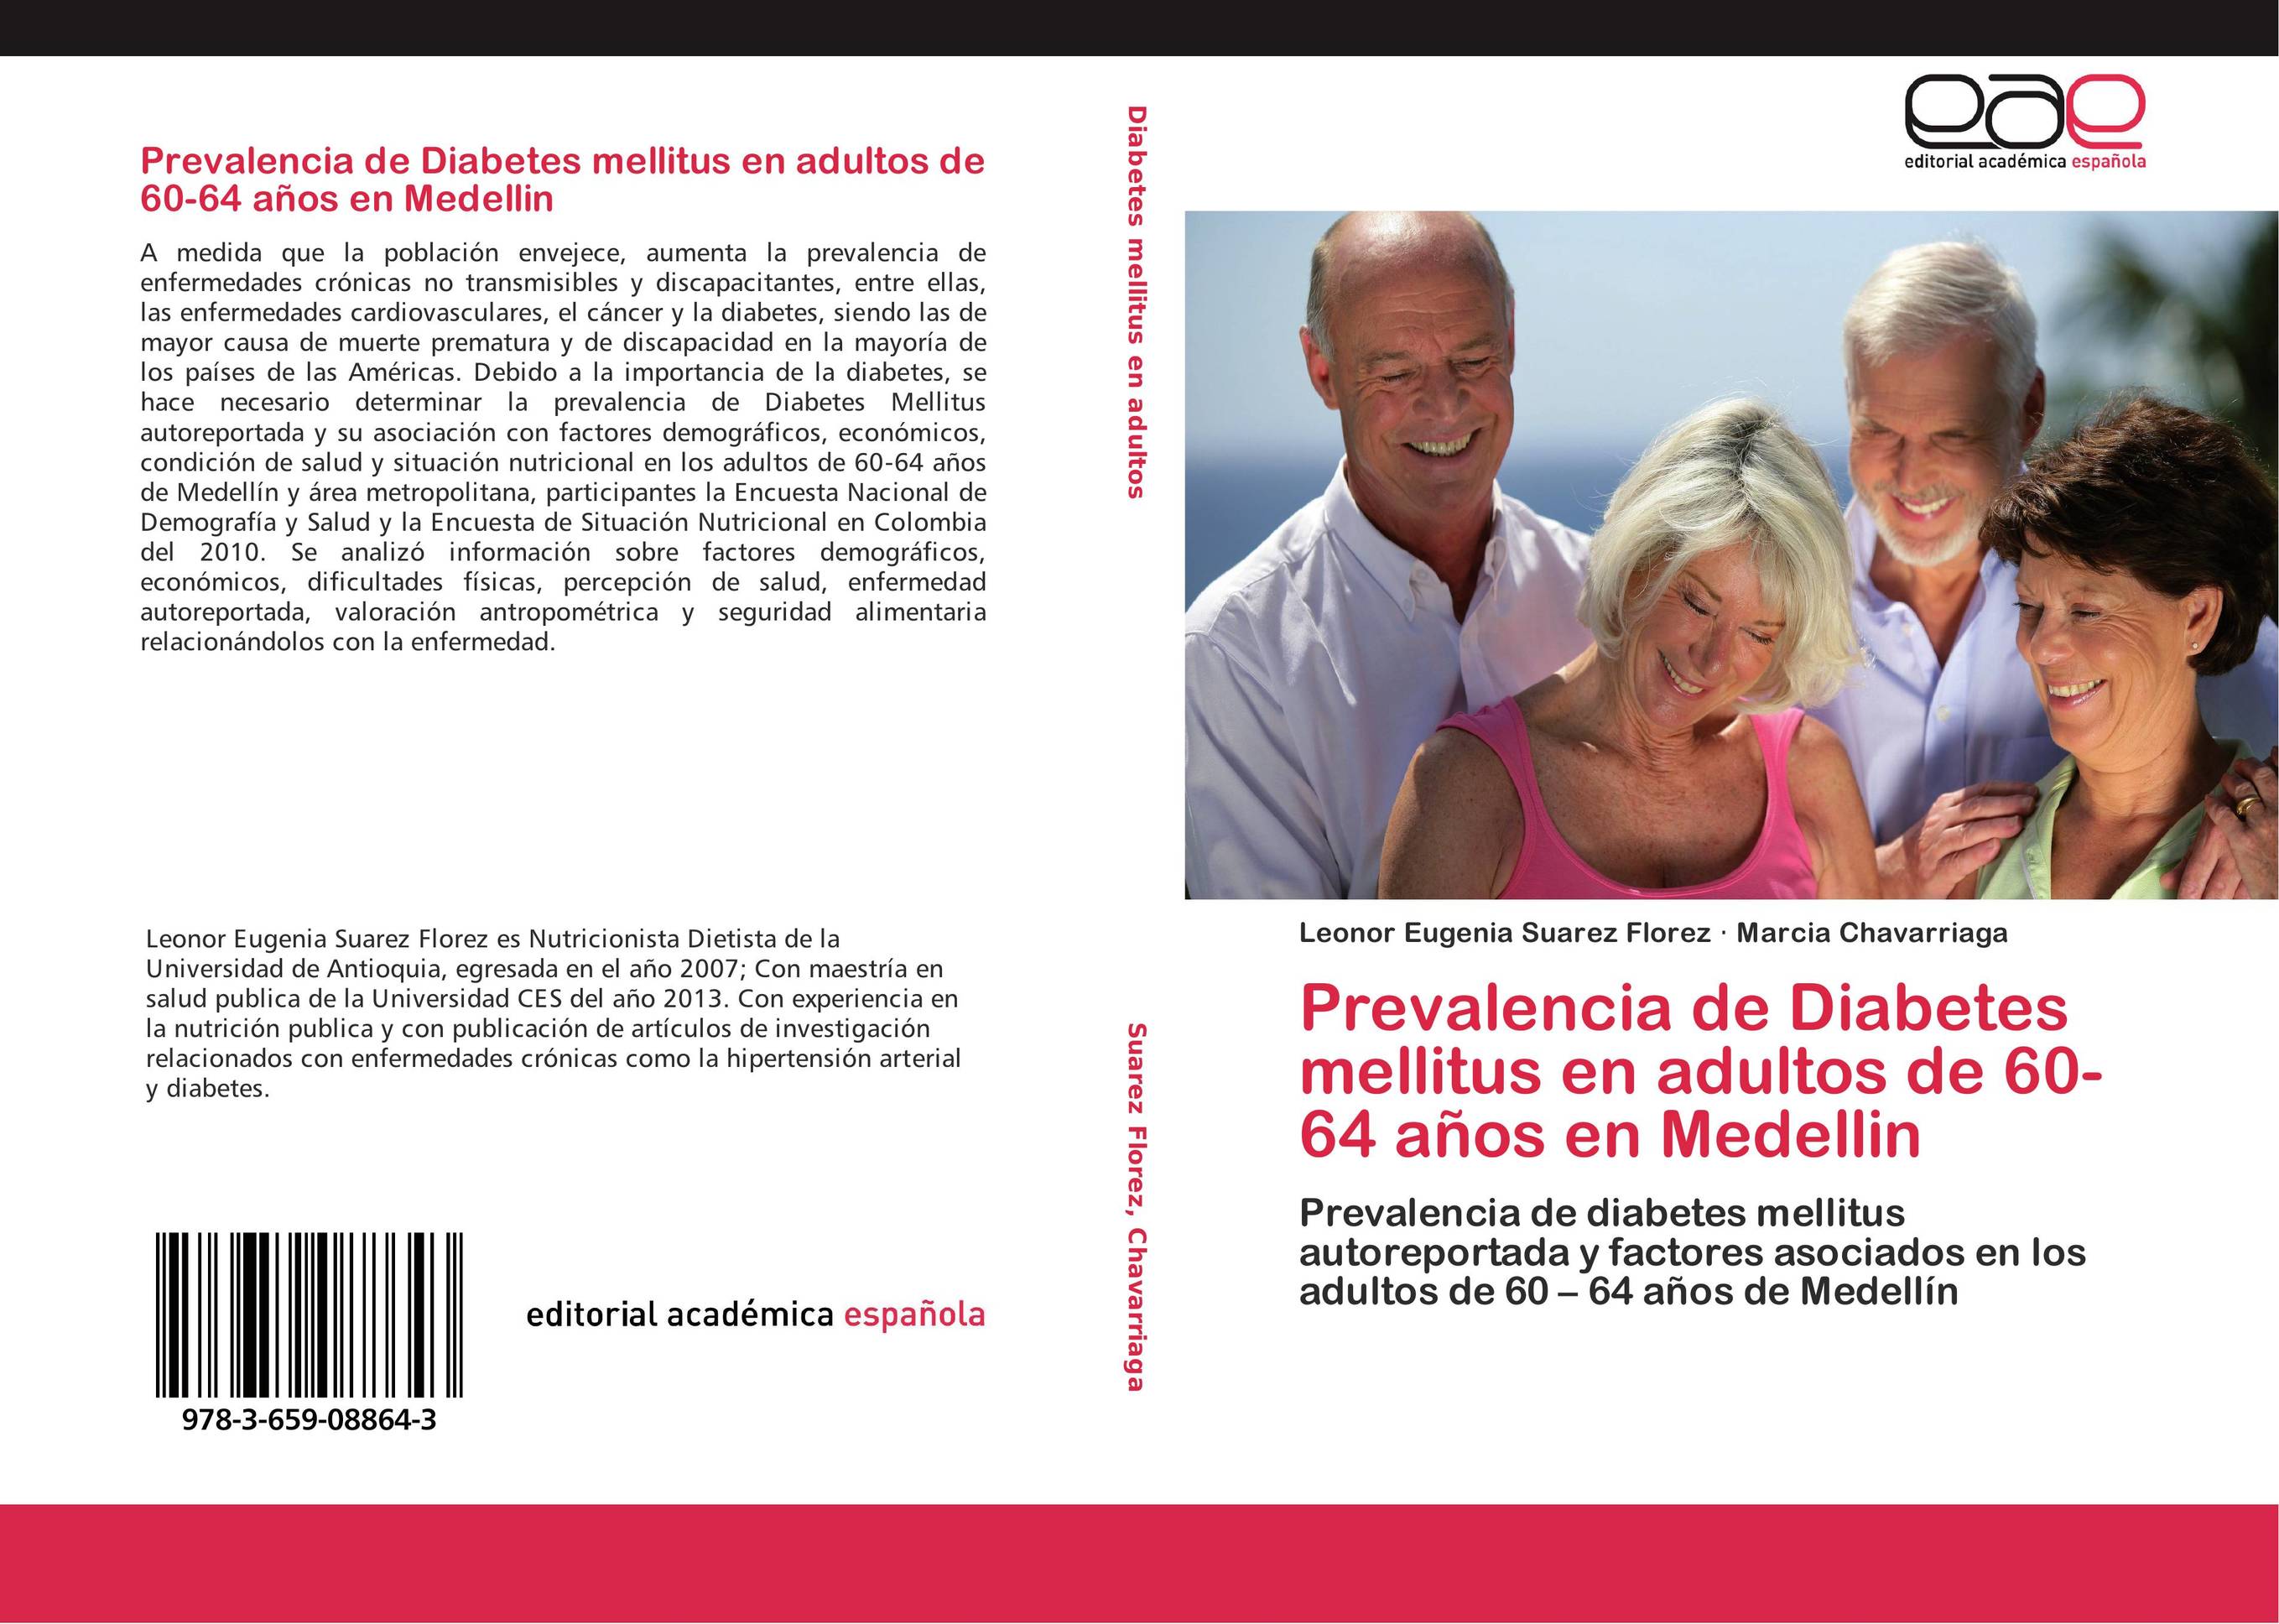 Prevalencia de Diabetes mellitus en adultos de 60-64 años en Medellin